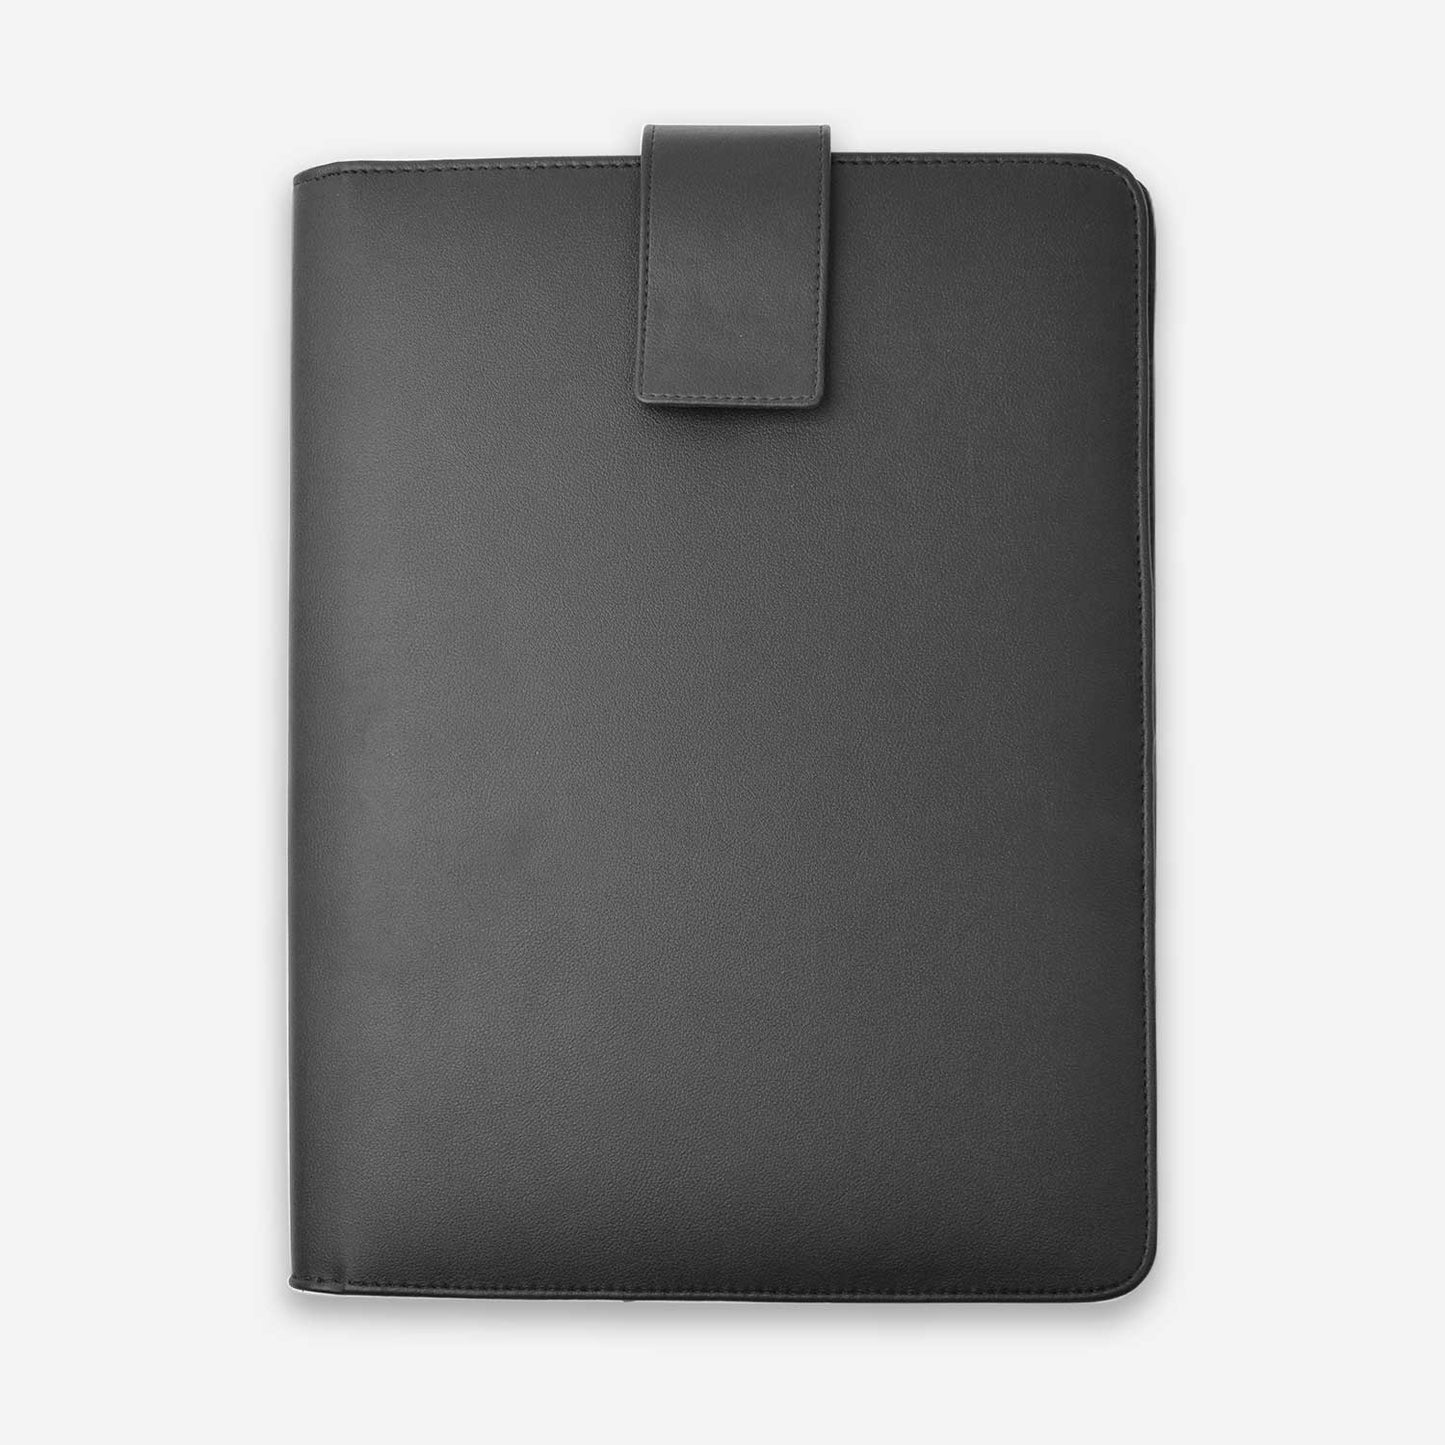 Basic Leather Folder